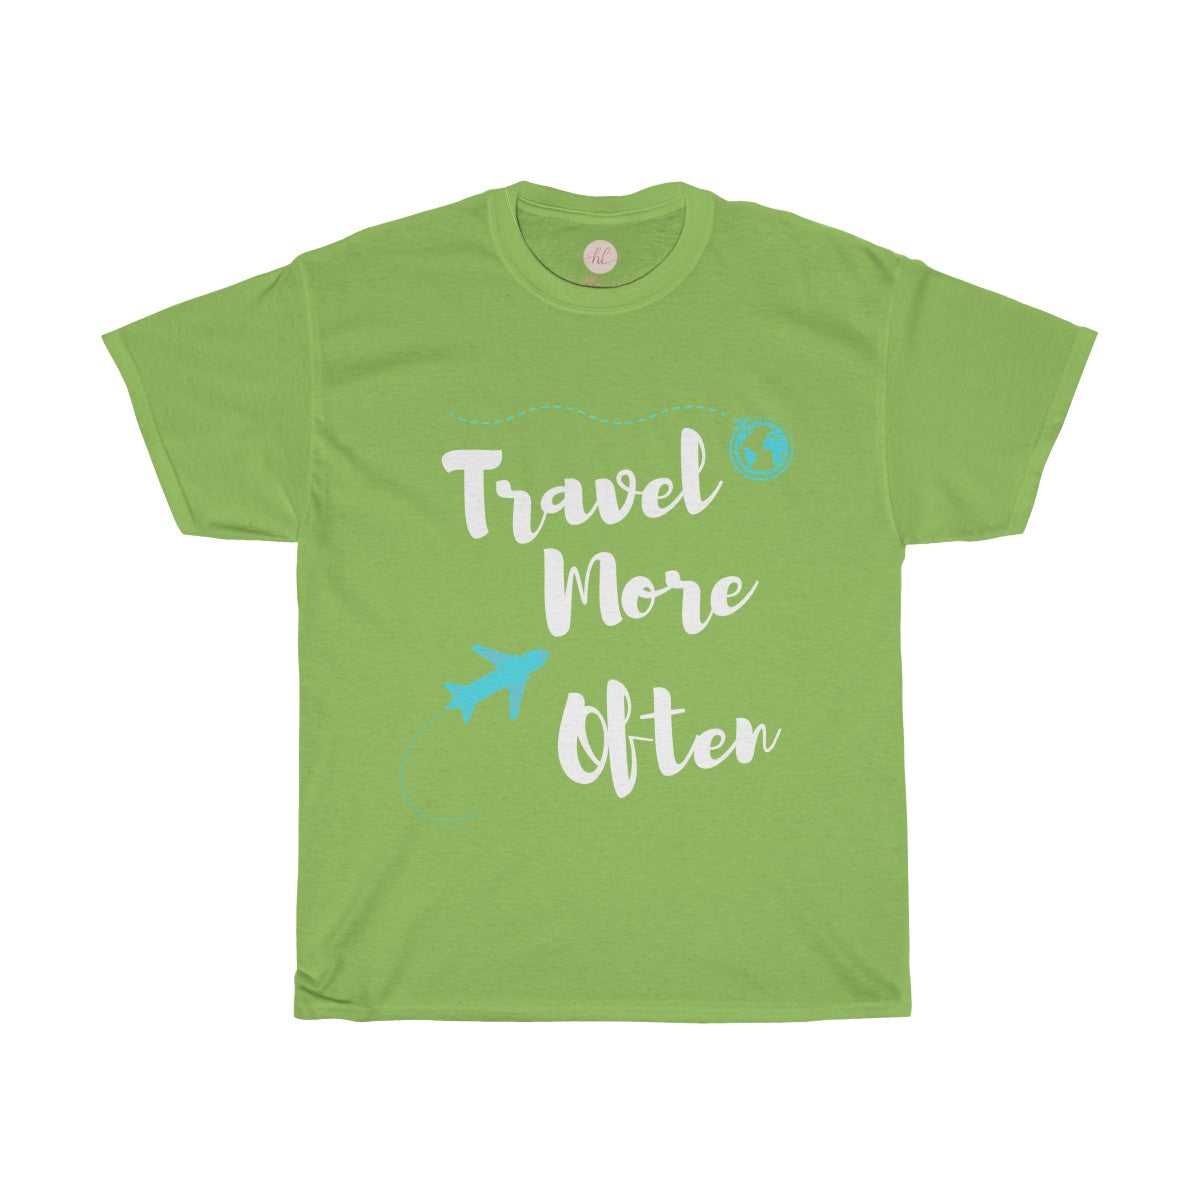 Travel More Often Tee| Travel More Often T-Shirt